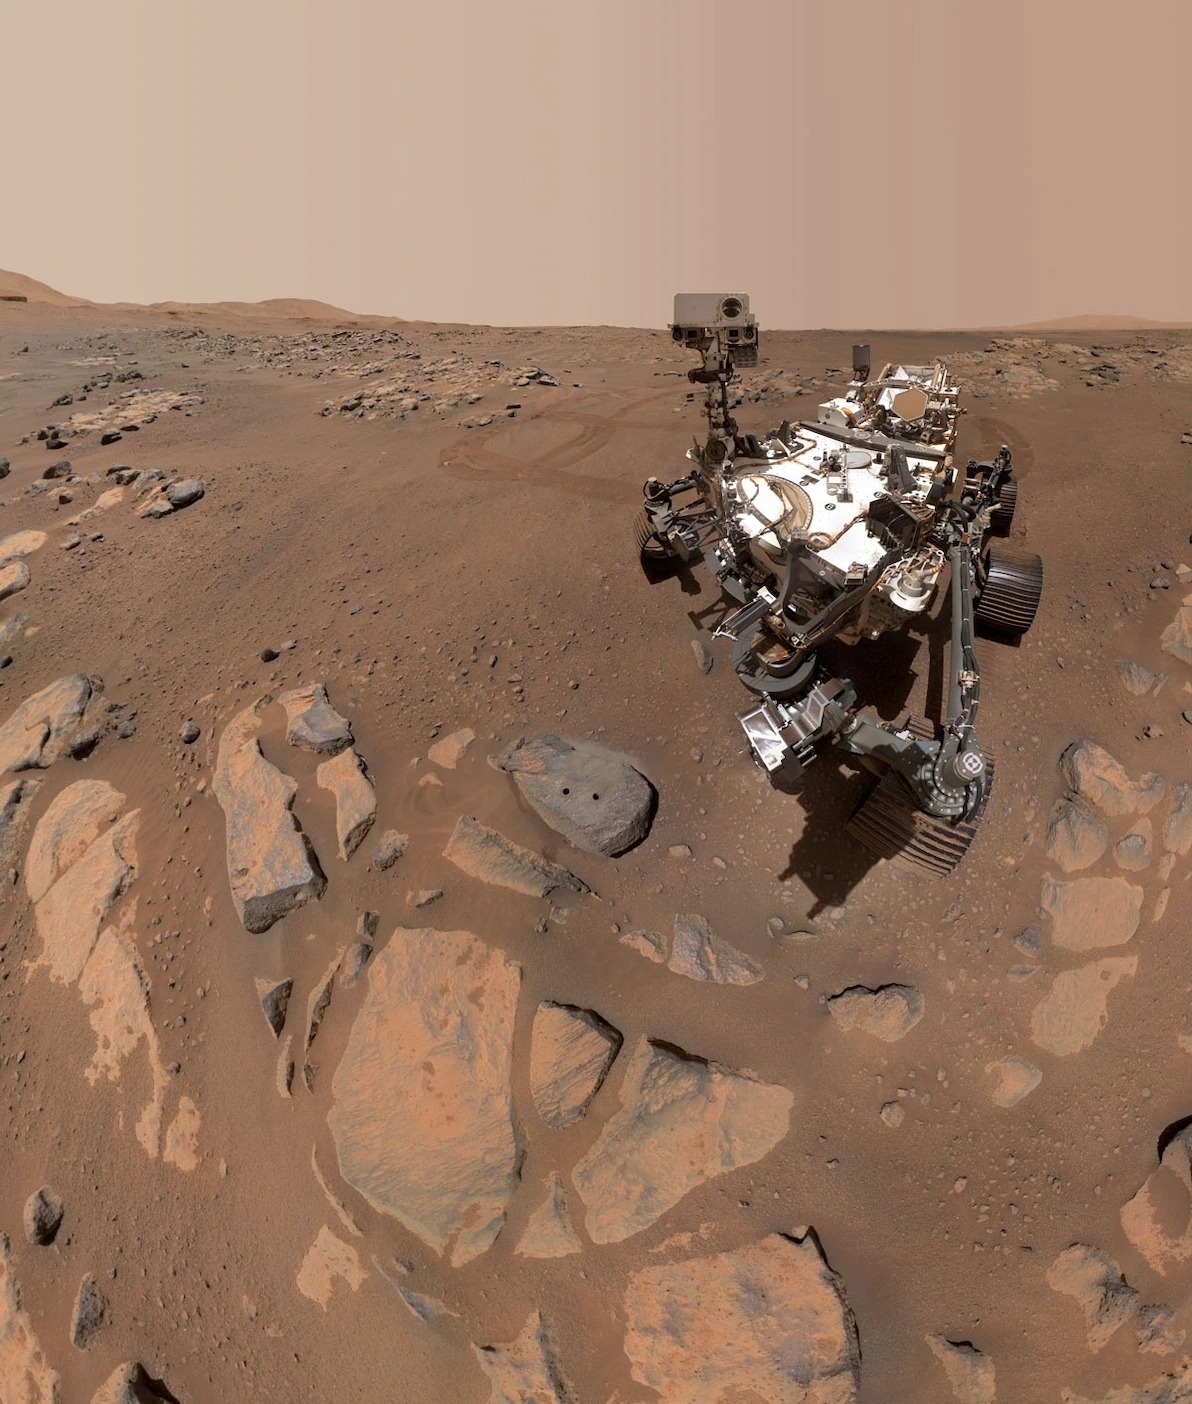 2021年9月10，美國航太總署毅力號火星探測車任務的第198個火星日，它在一塊名為「羅切特」（Rochette）的岩石上拍攝了這張自拍照。照片上還可以看到毅力號使用機械手臂鑽取岩芯樣本時留下的兩個小洞。PHOTOGRAPH BY NASA, JPL-CALTECH, MSSSPHOTOGRAPH BY NASA, JPL-CALTECH